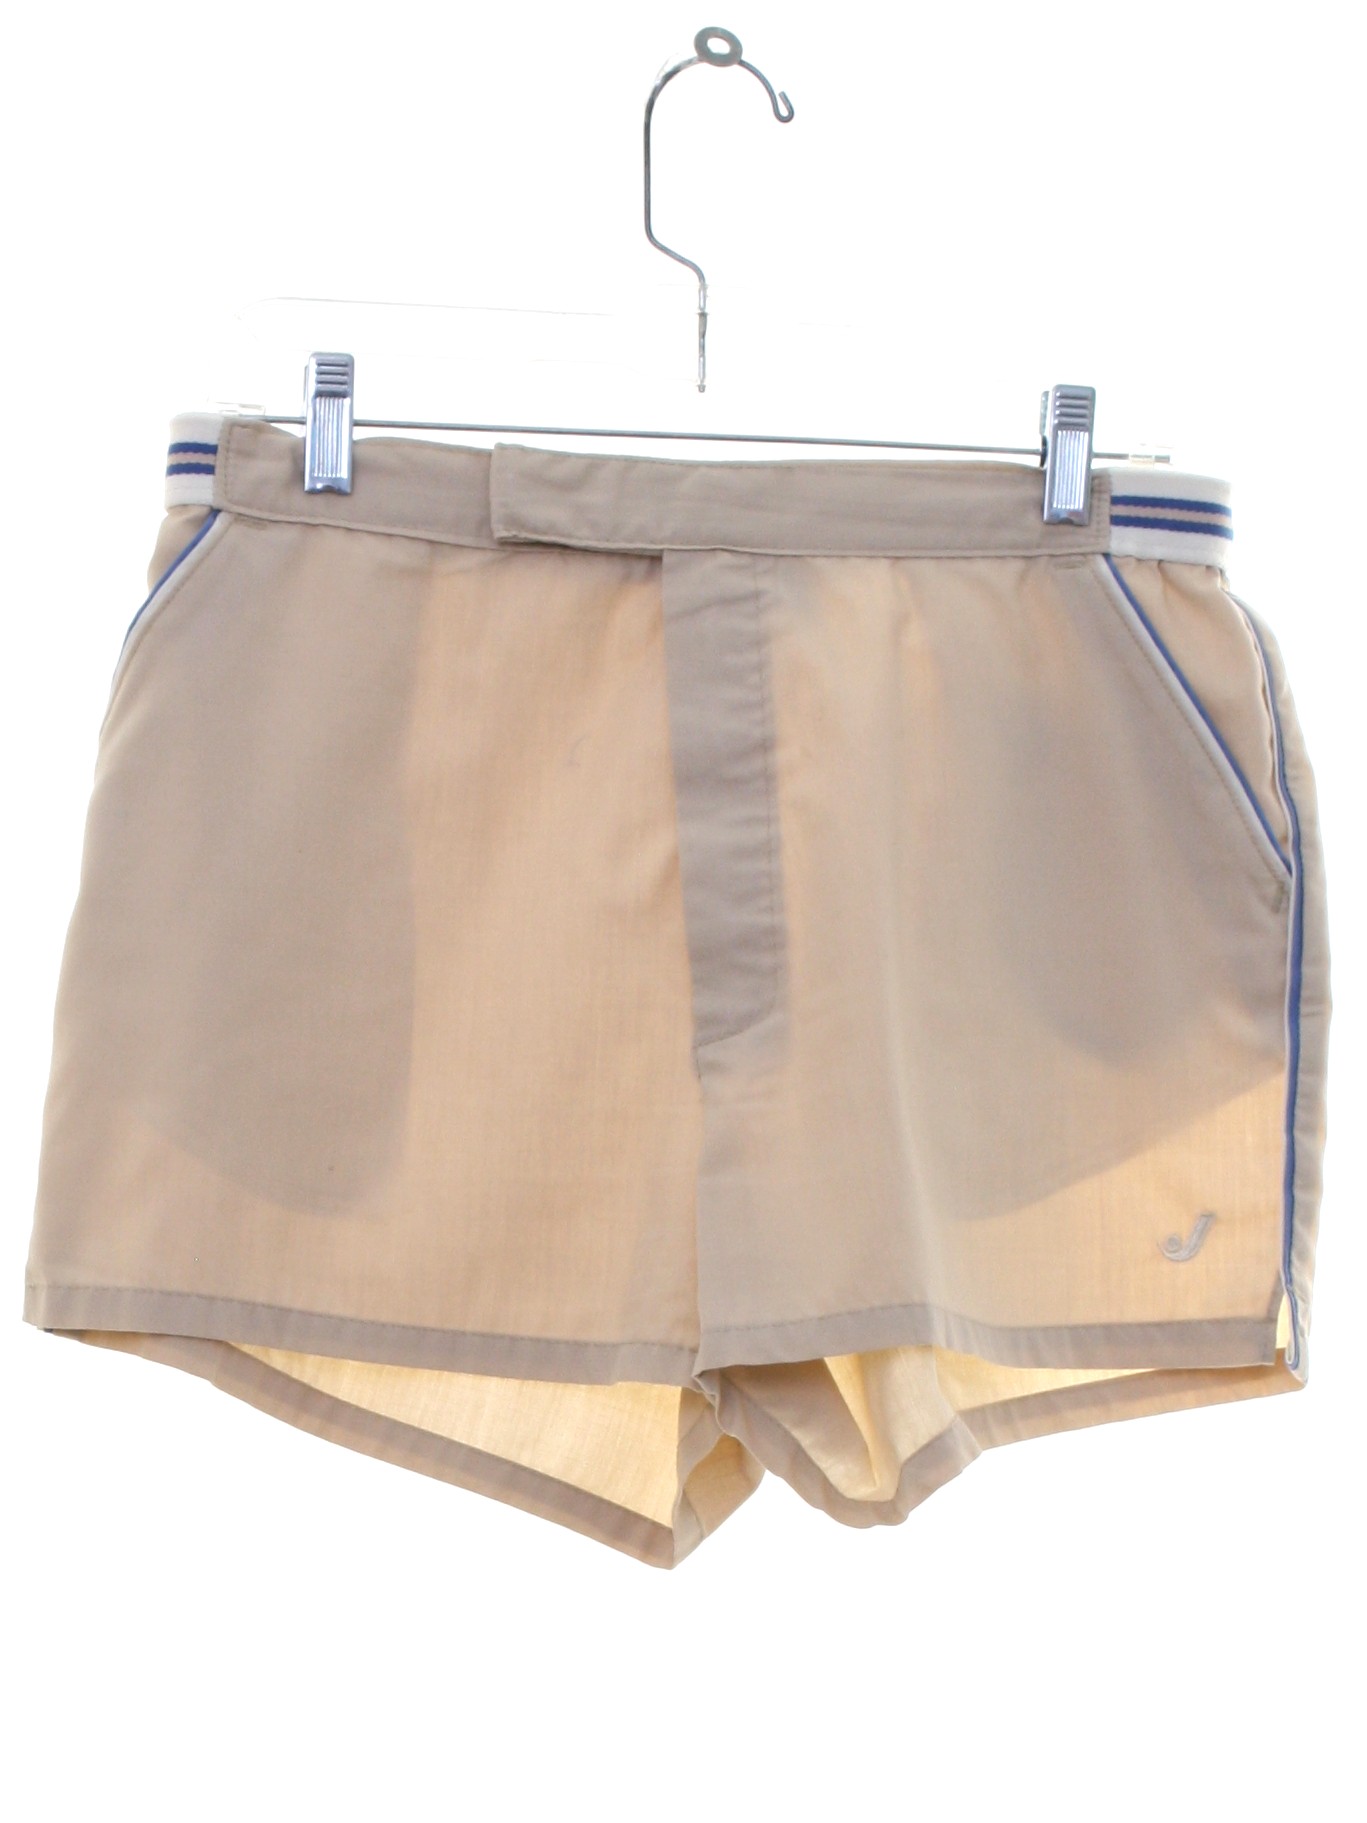 Jantzen Eighties Vintage Shorts: 80s -Jantzen- Mens beige, blue and ...